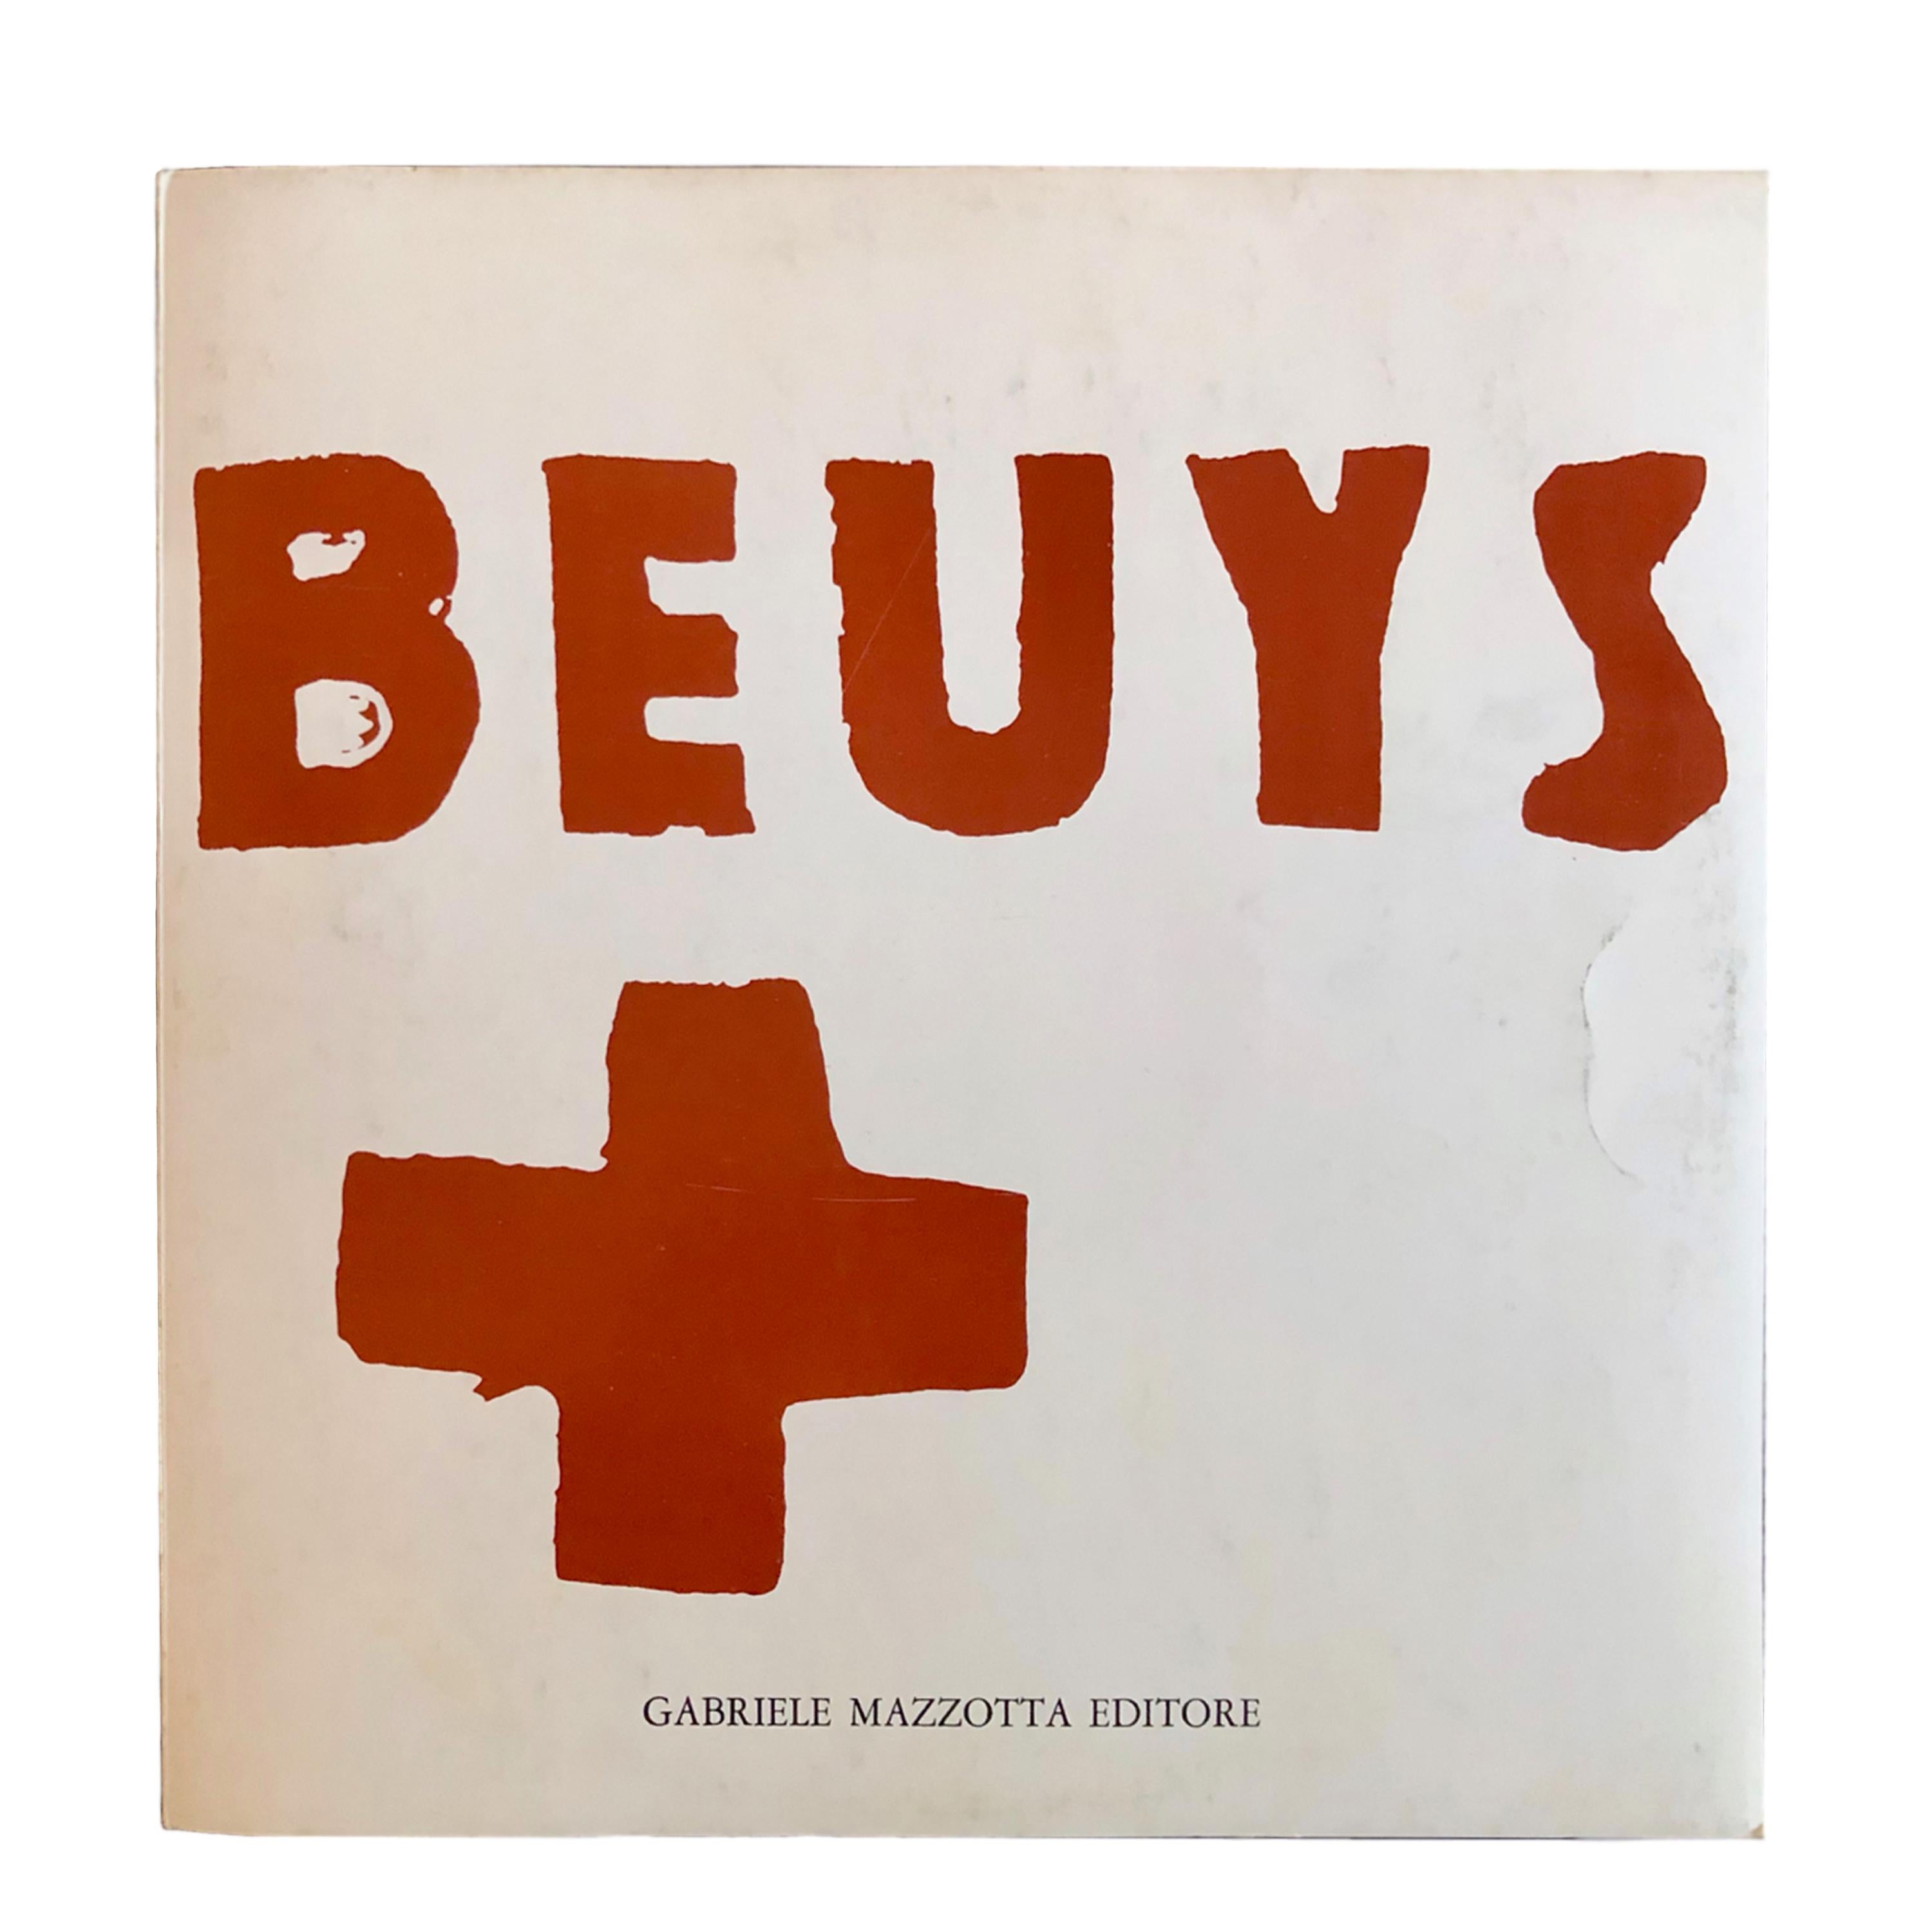 Una performance di Joseph Beuys, registrata alla Staatliche Kunstakademie di Düsseldorf nel 1968. 
Interpreti: J. Beuys in collaborazione con H. Christiansen e J. Stüttgen. 
Questa è l'edizione dell'opera pubblicata da Mazzotta, Milano. Numerata